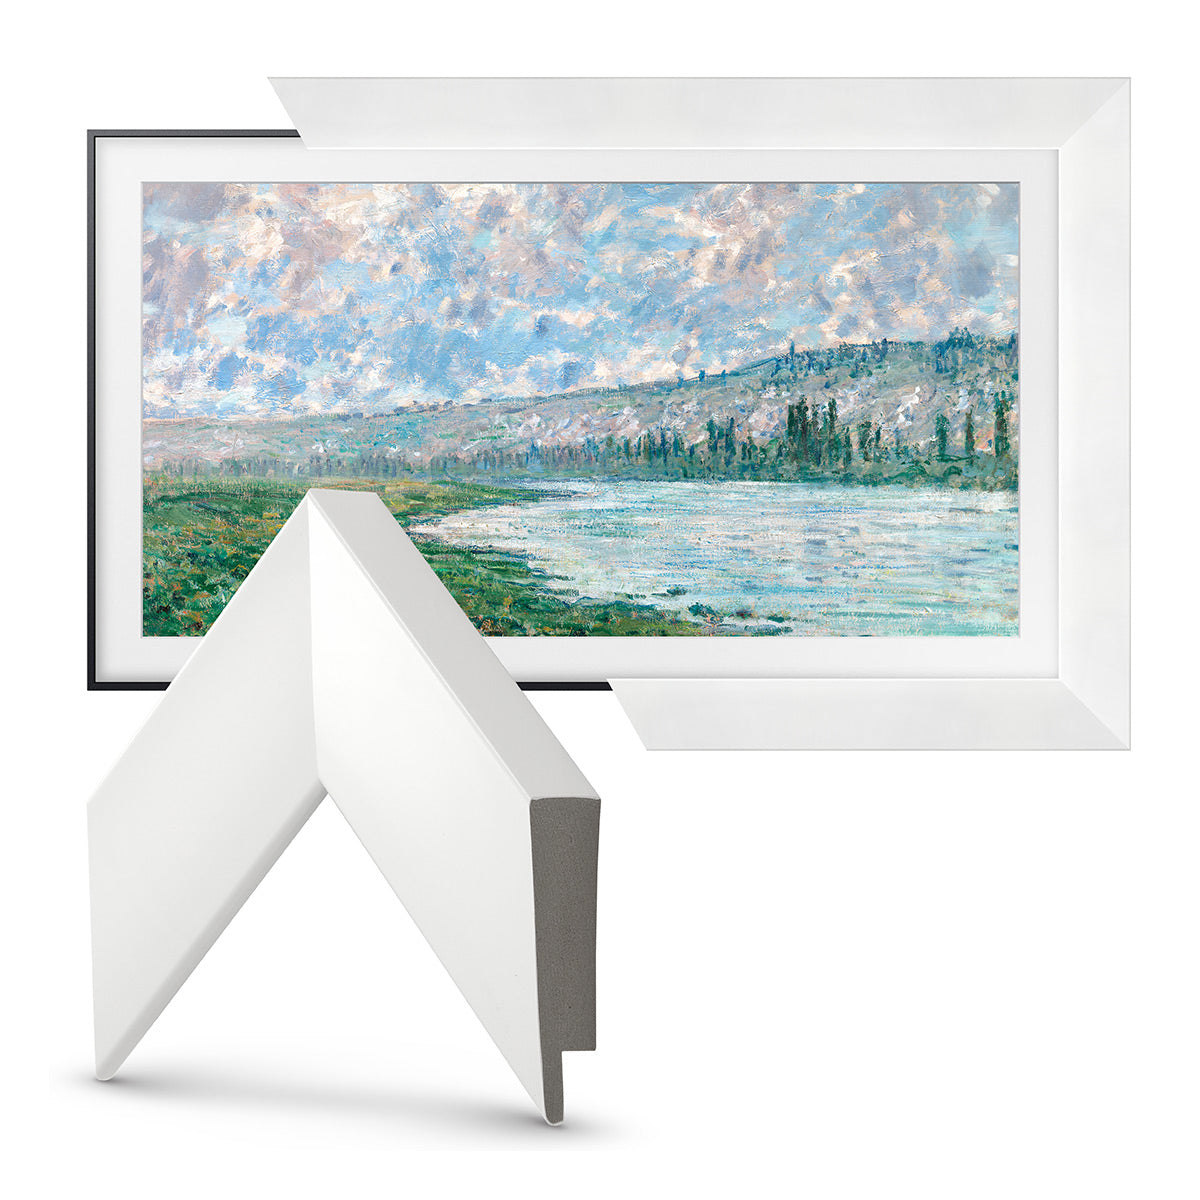 Deco TV Frames Customizable Frame for Samsung The Frame 2021 50" TV (Gloss White)